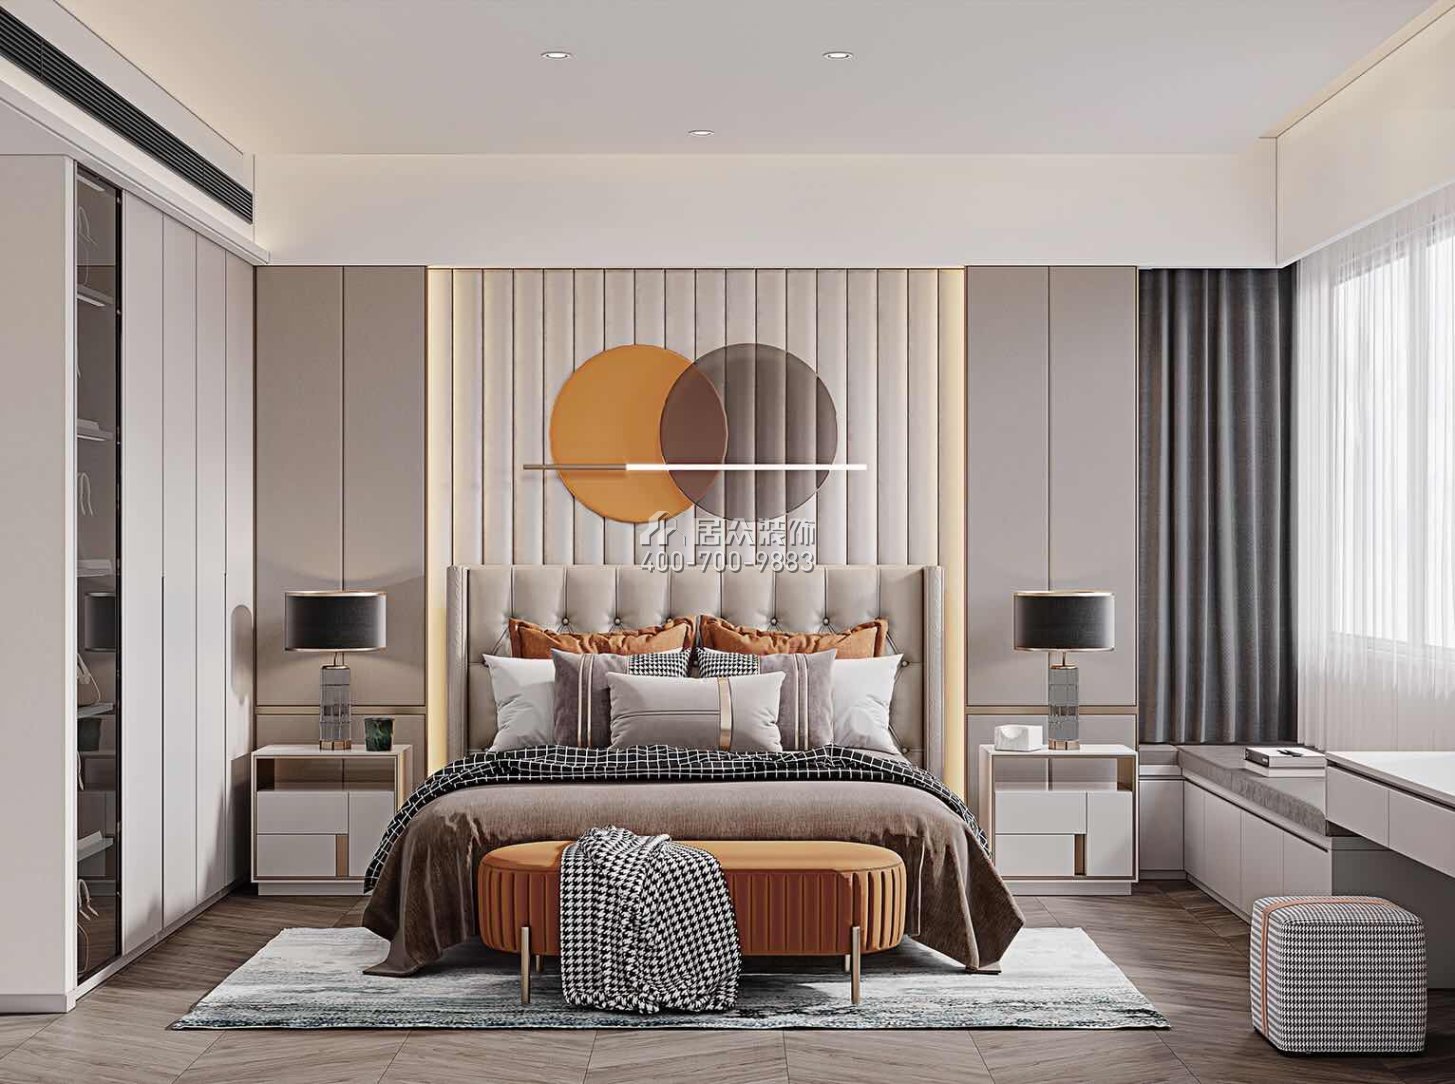 保利西海岸180平方米現代簡約風格平層戶型臥室裝修效果圖